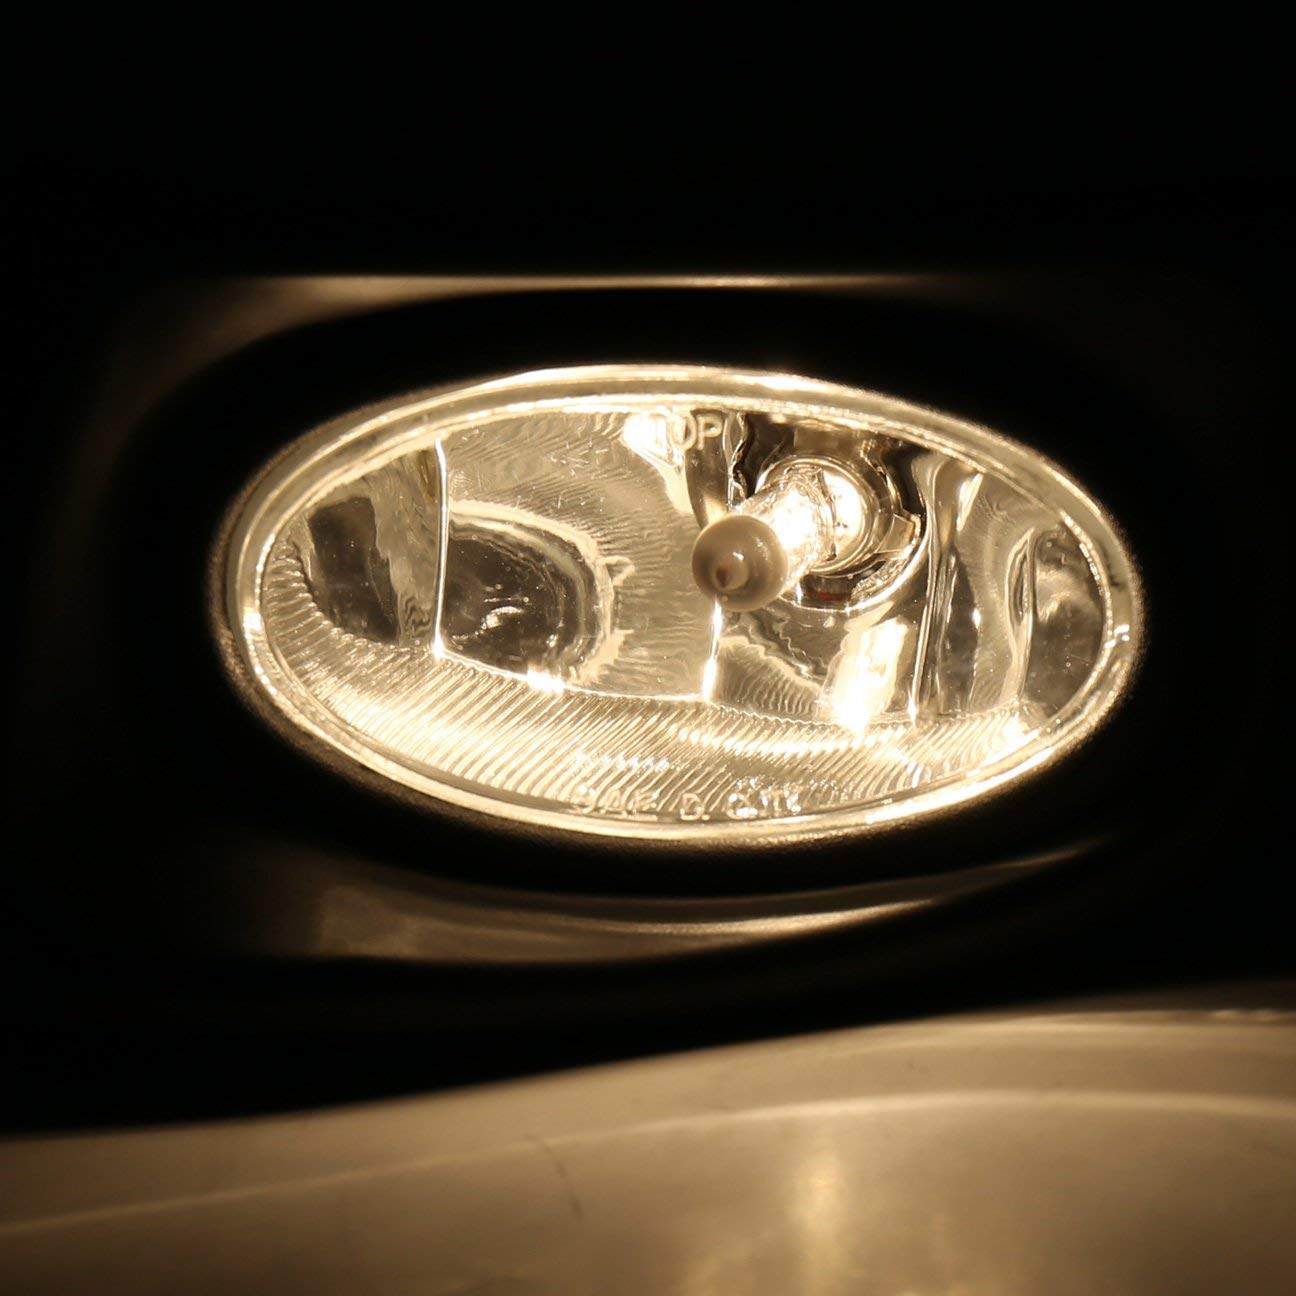 Lámpara de luz antiniebla parachoques delantero con lente transparente para Honda Accord 03-05